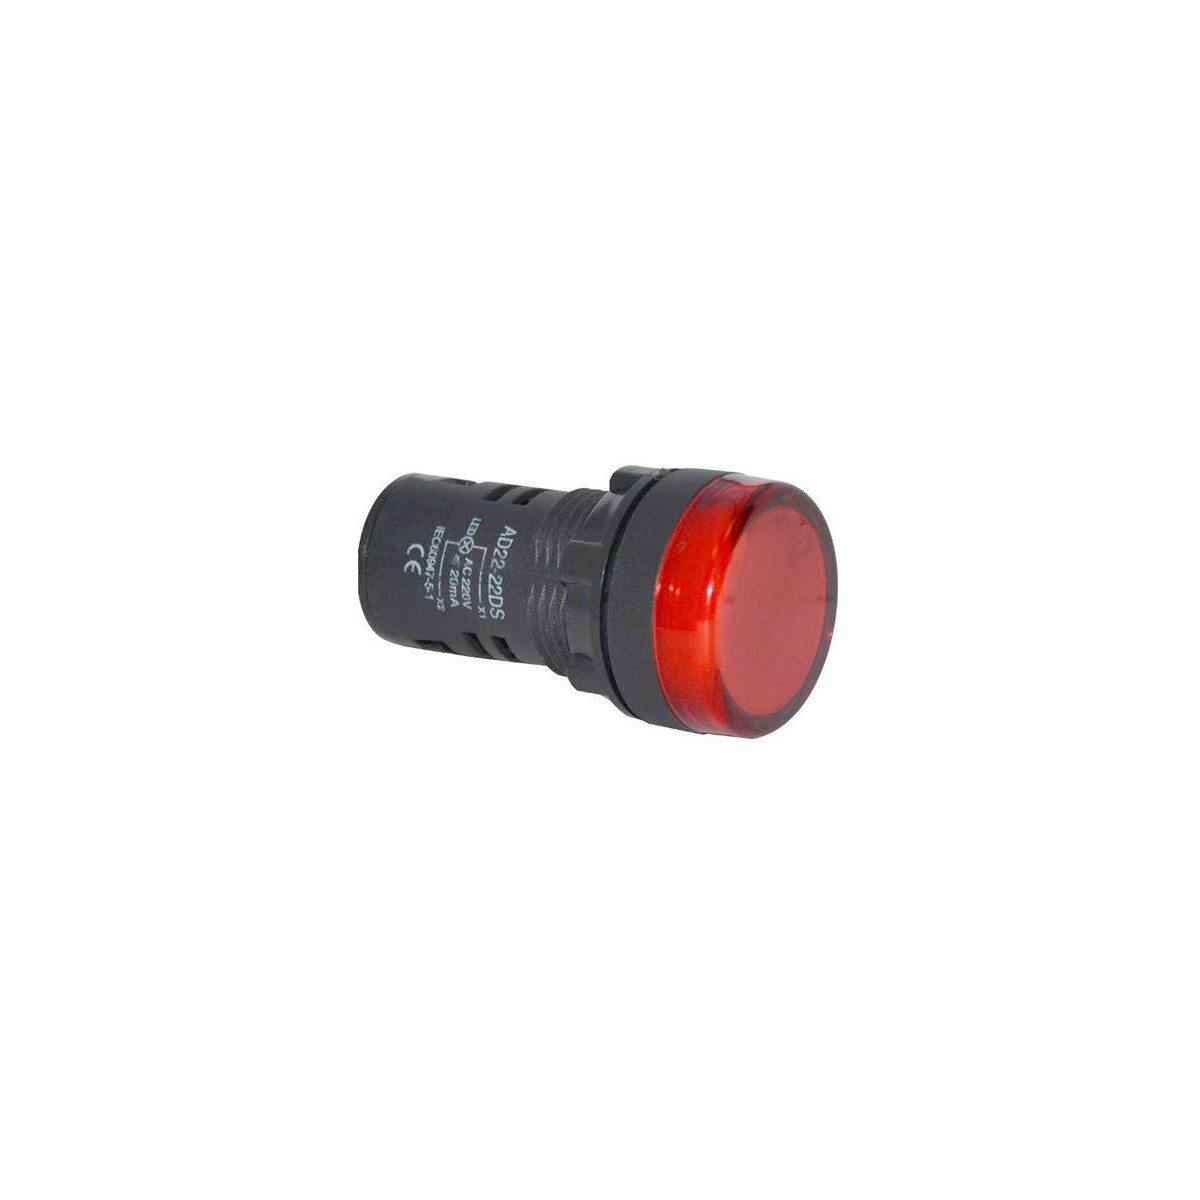 More about Kontrolka kulatá 230V LED červená 29mm HADEX